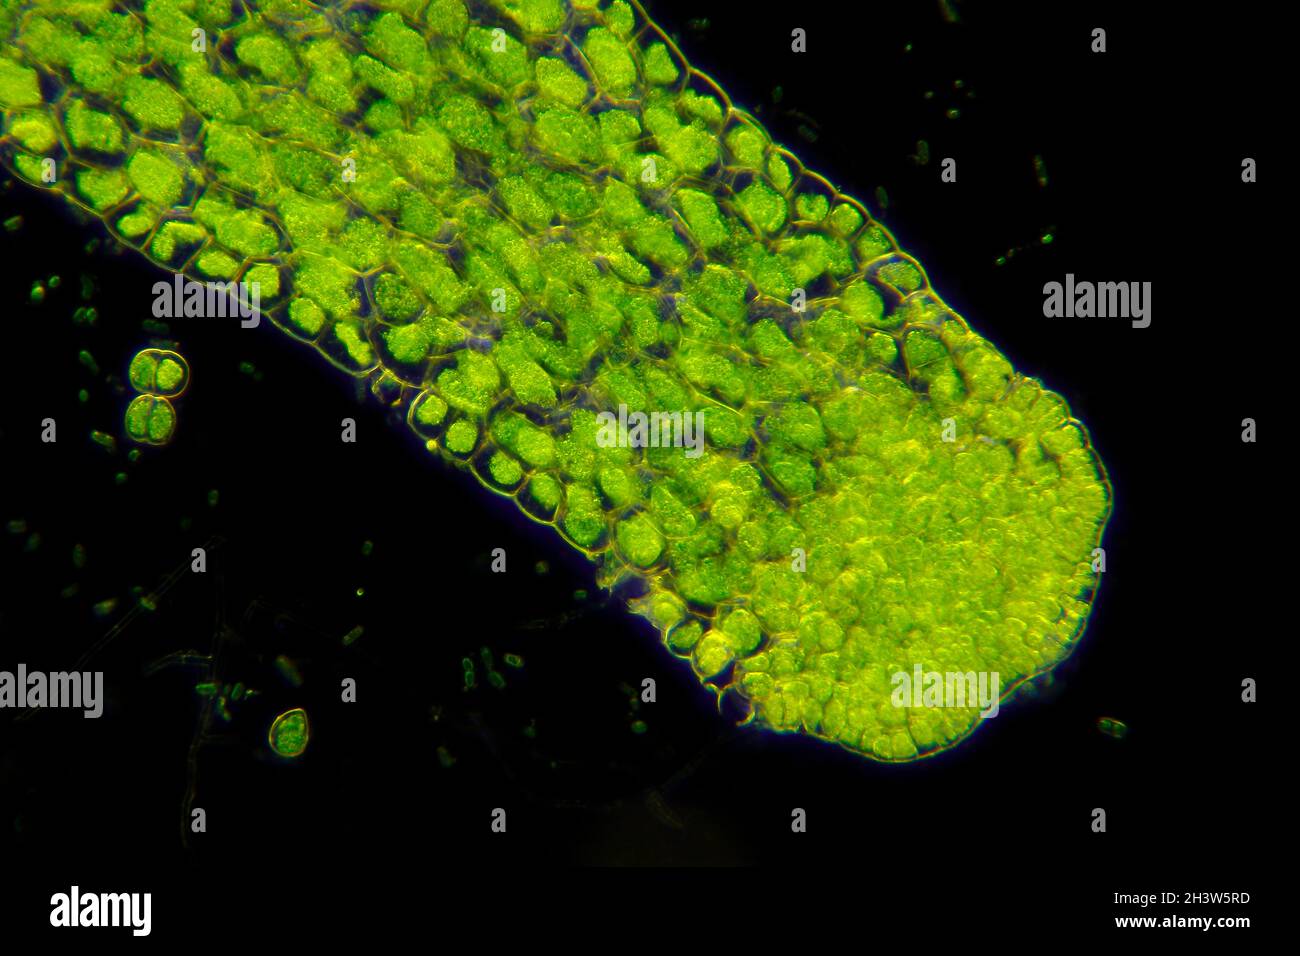 Microscopic view of Crystalwort (Riccia fluitans) thalli. Darkfield illumination. Stock Photo